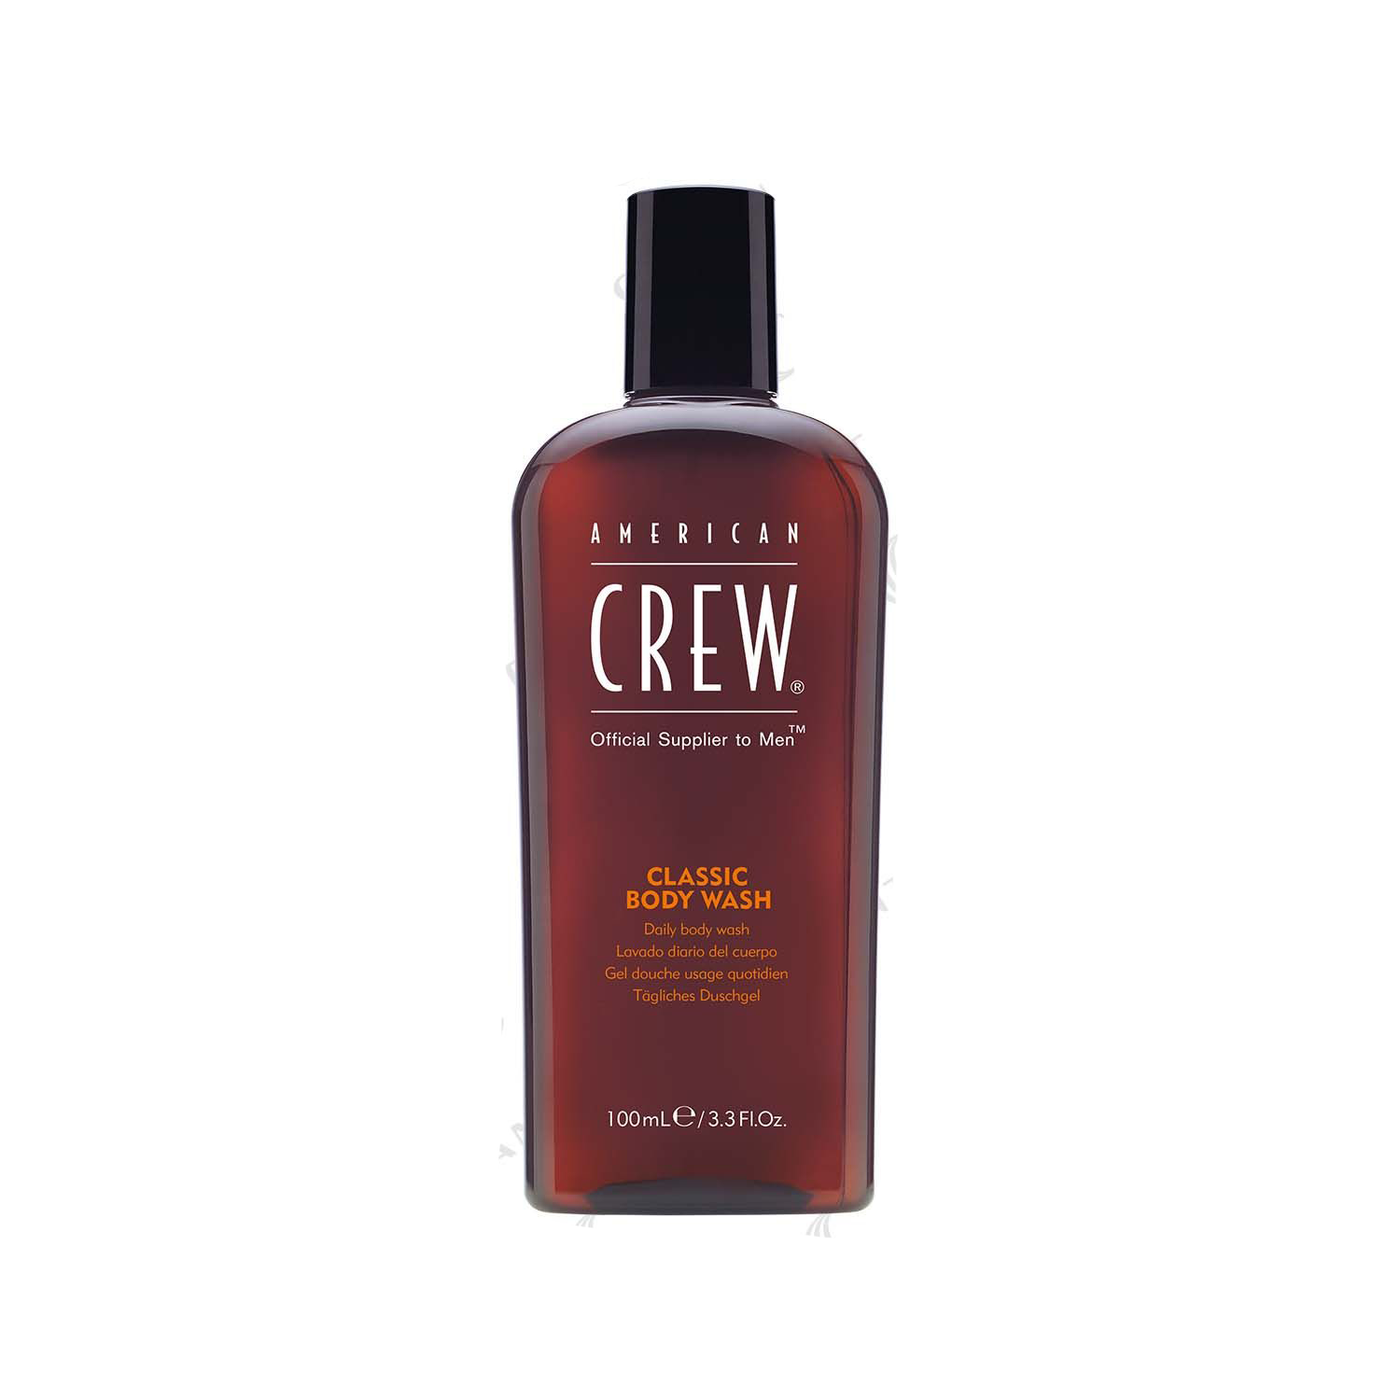 AMERICAN CREW - Classic Body Wash 3.3 fl oz